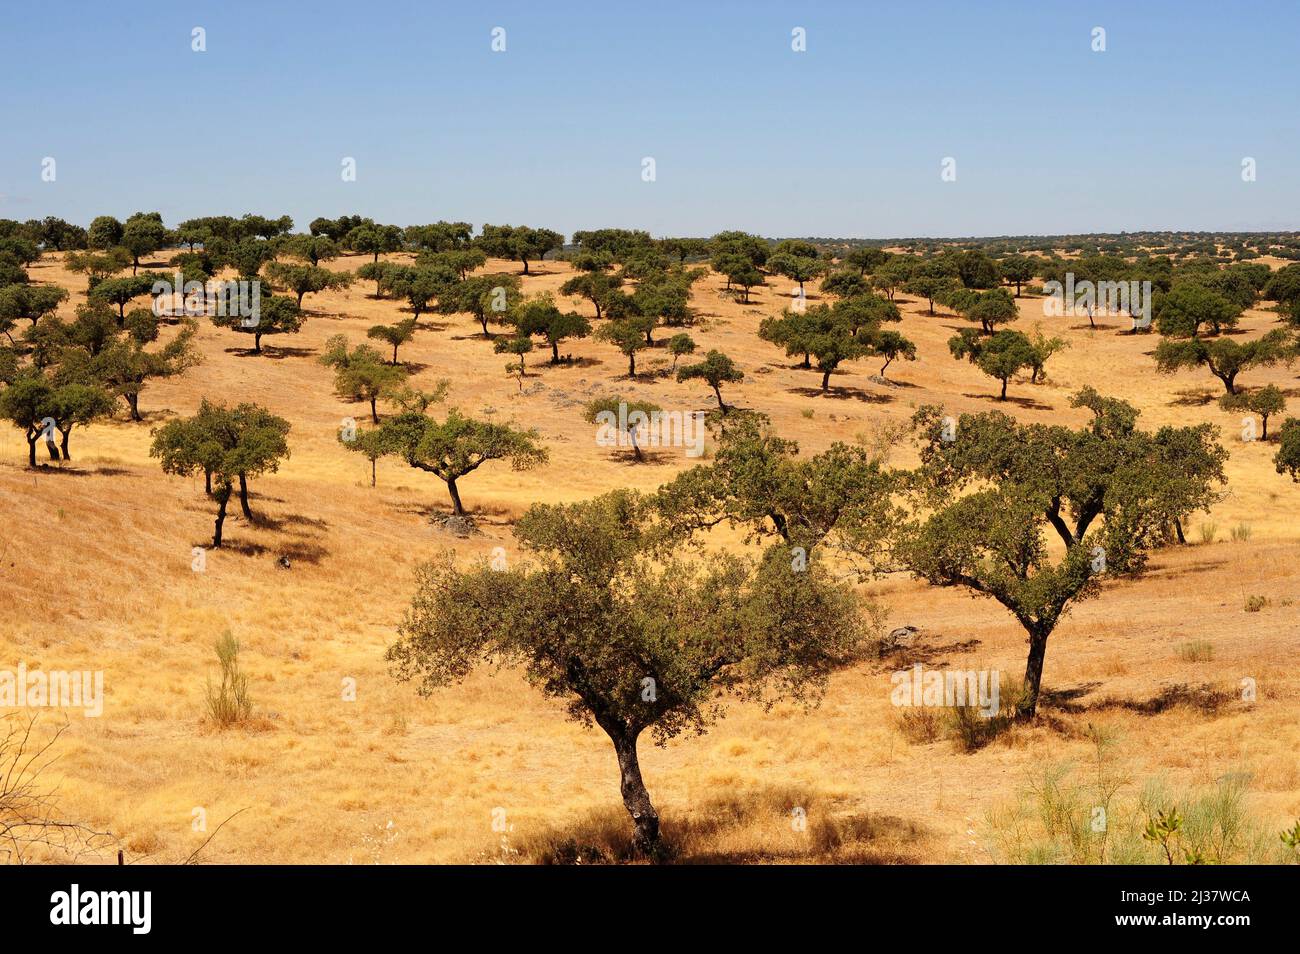 Le chêne d'Evergreen (Quercus ilex ballota ou Quercus ilx rotundifolia) est un arbre à feuilles persistantes originaire du bassin méditerranéen (péninsule ibérique et Banque D'Images